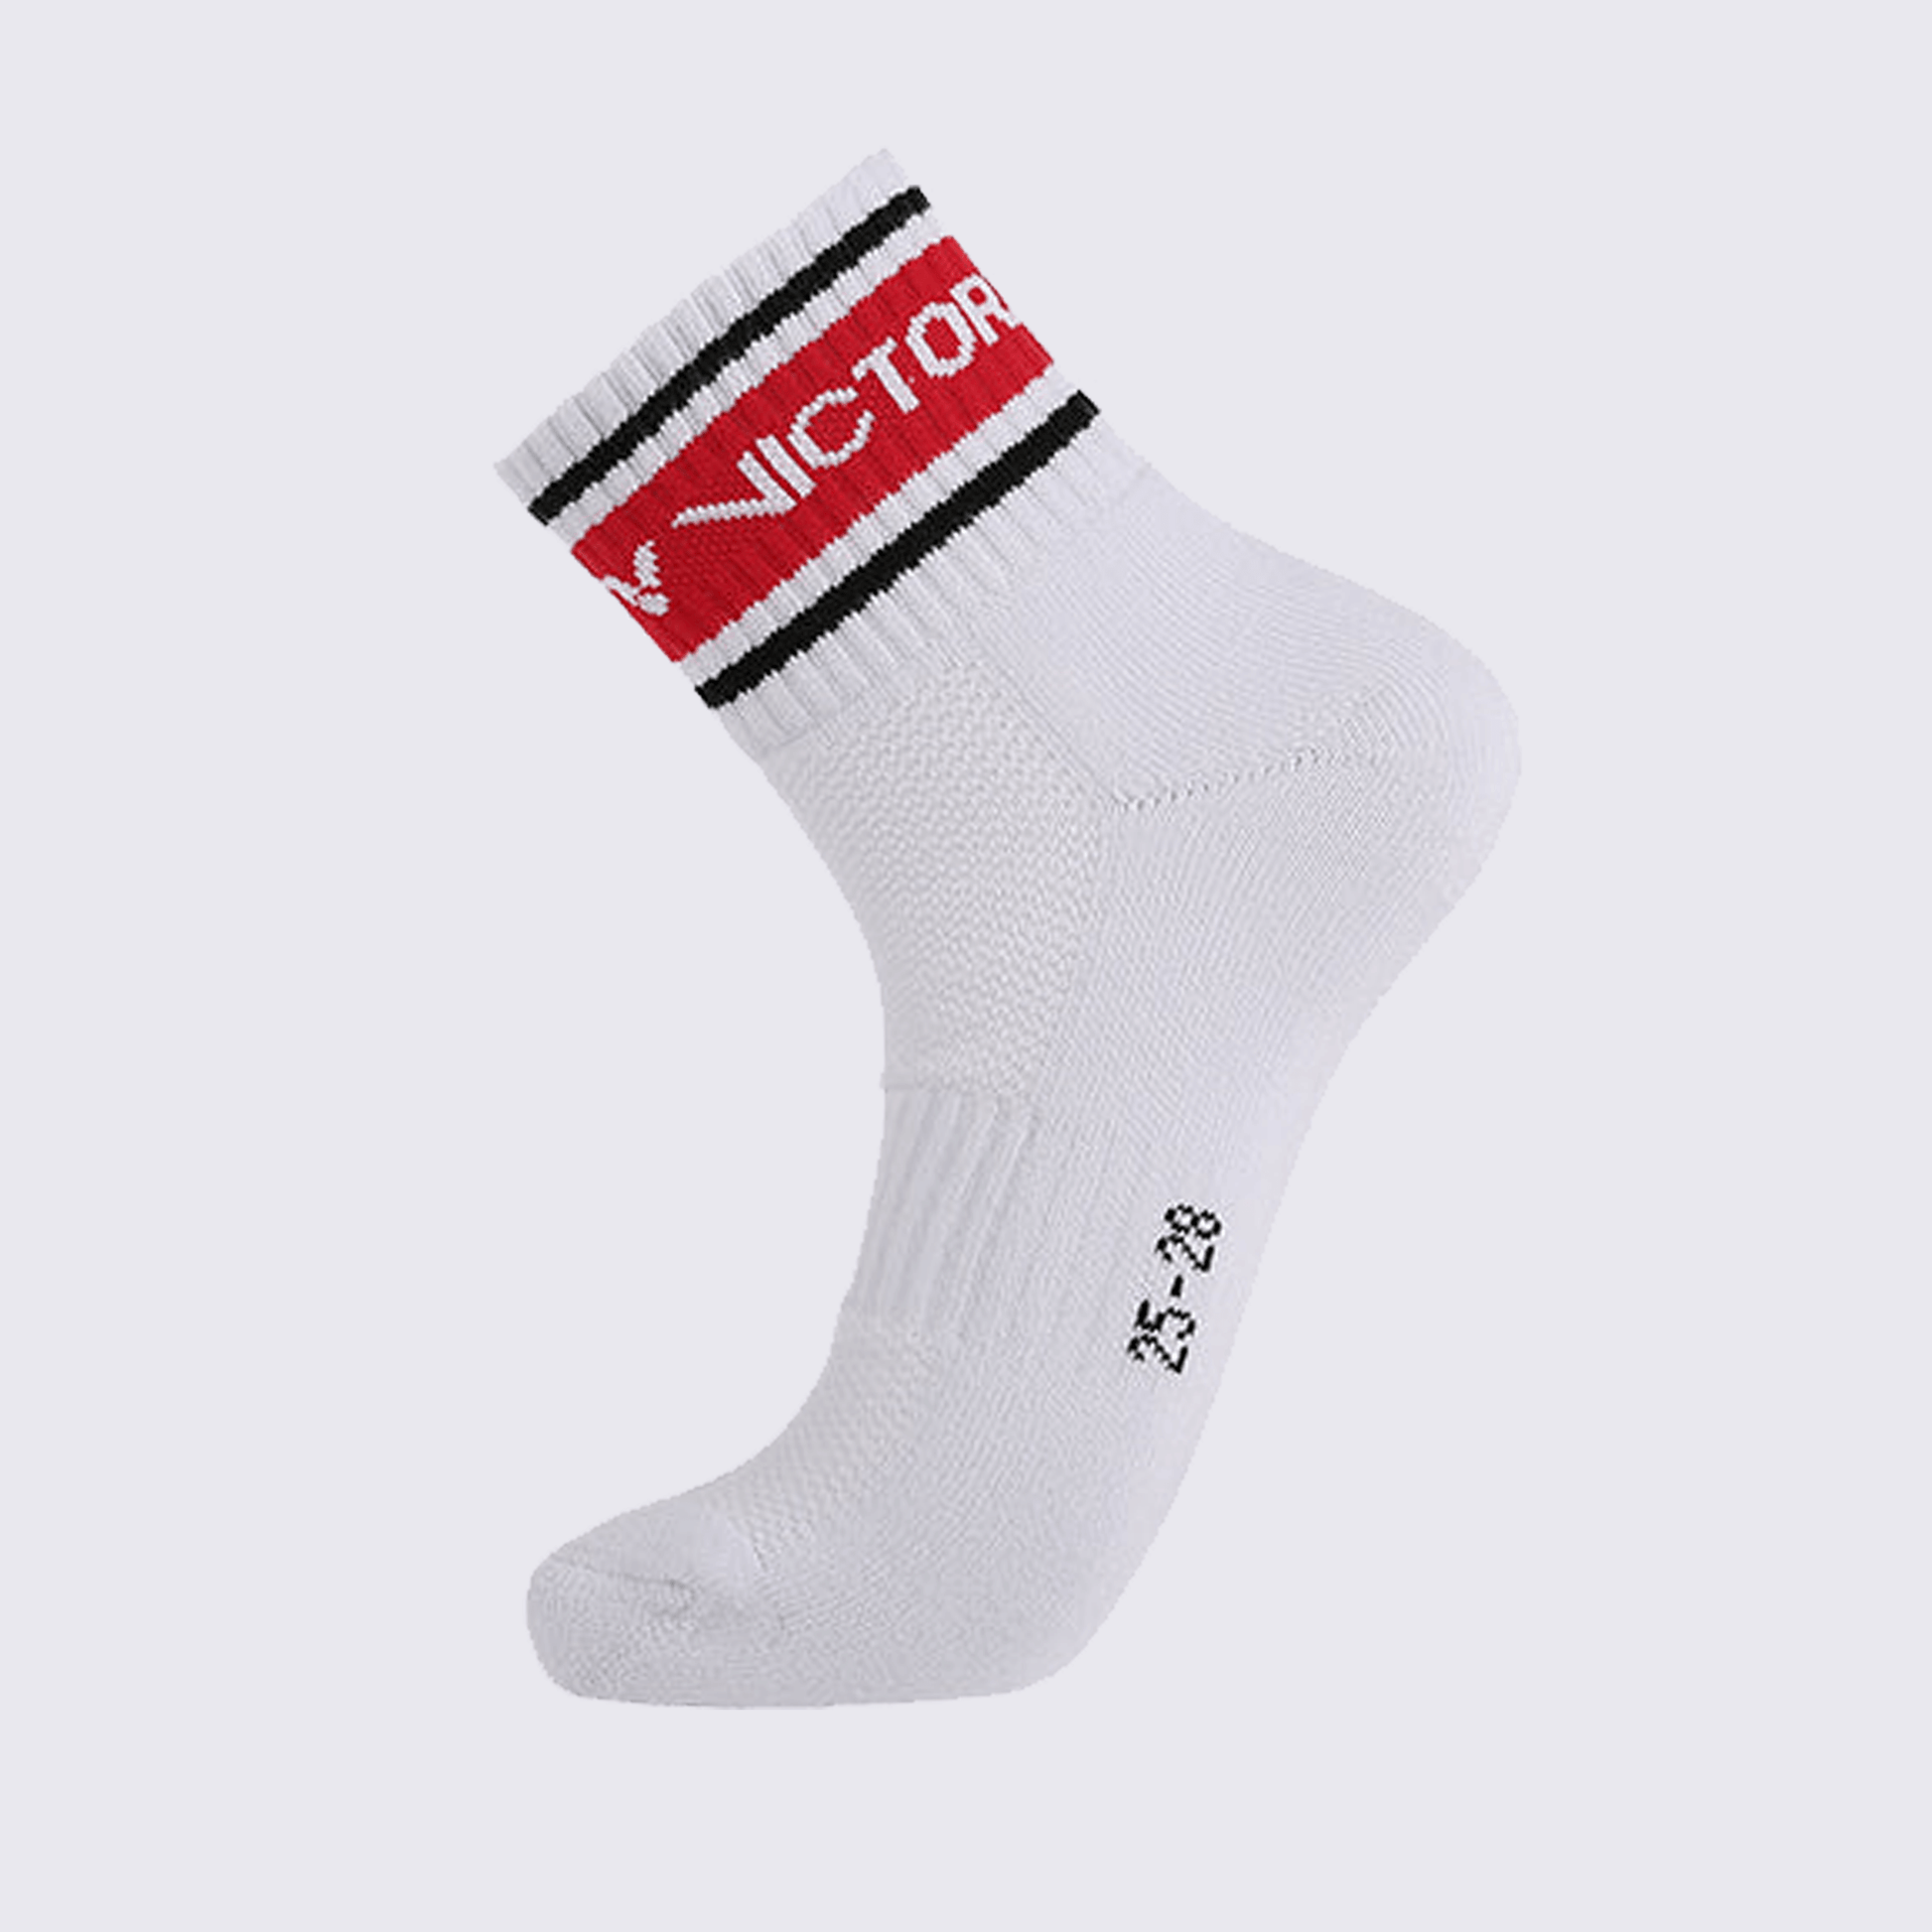 Victor Men's Sports Socks Large SK156D (Red)